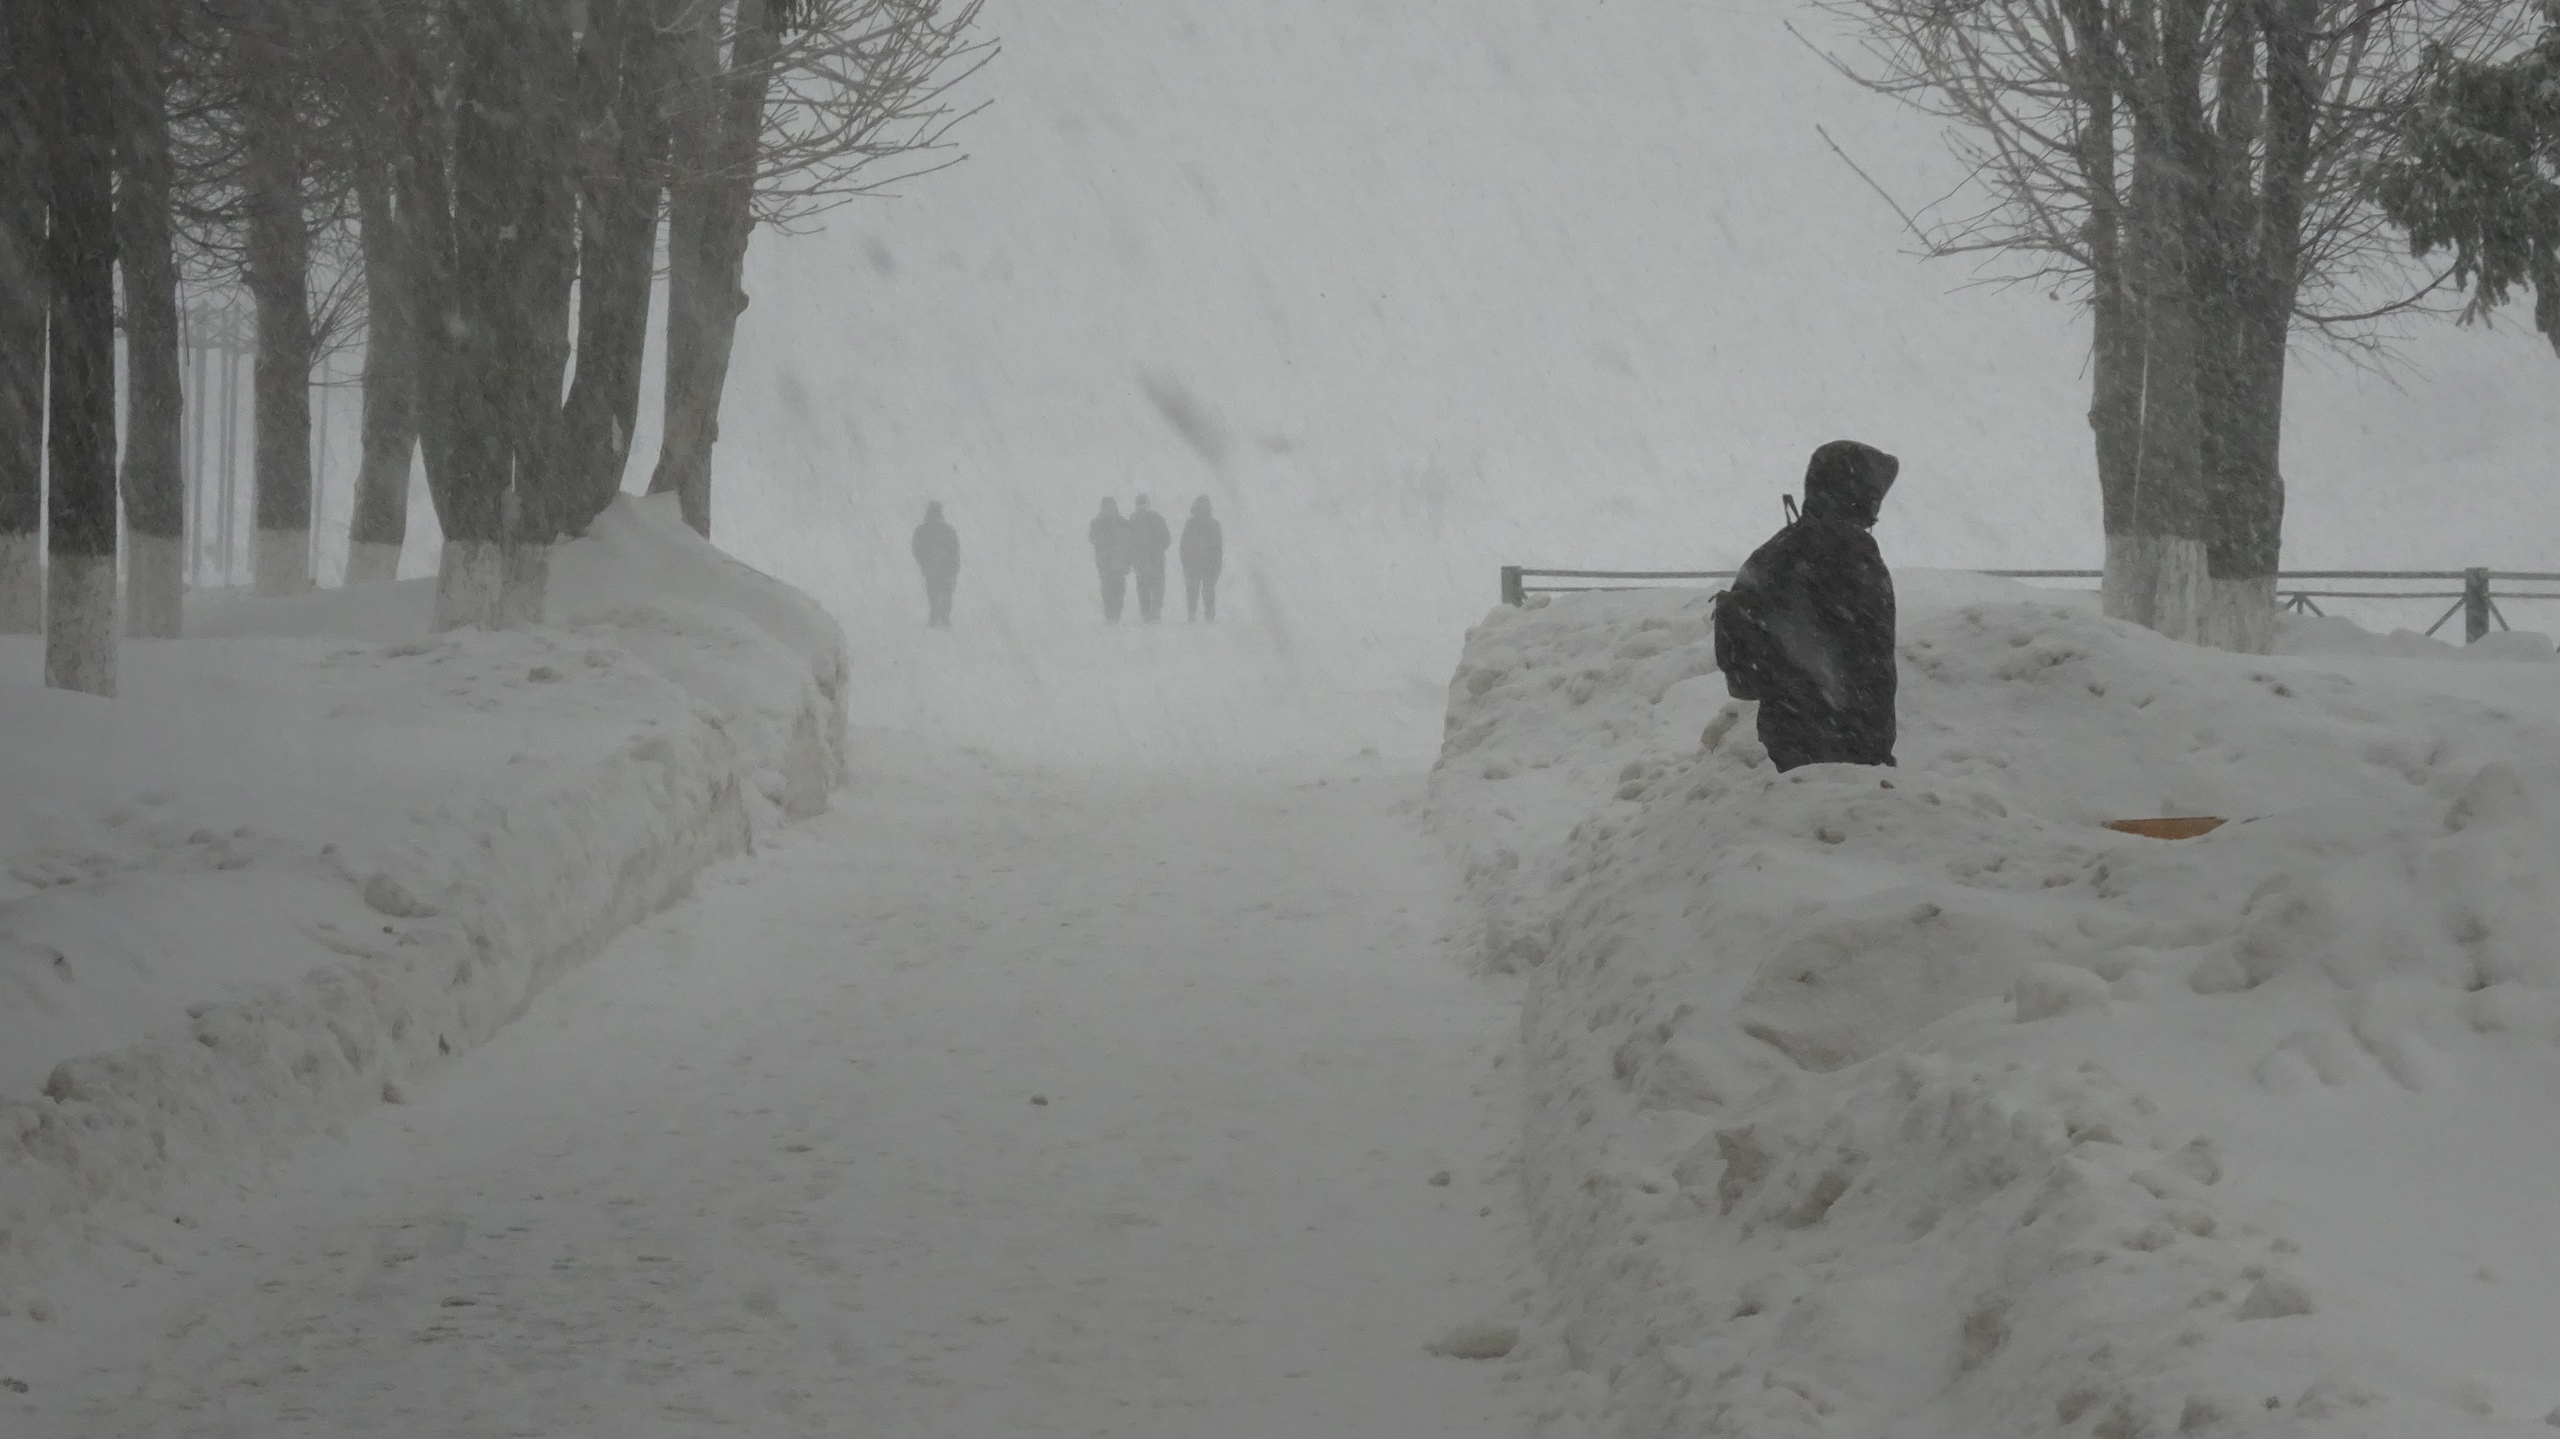 Метель и изморозь: нижегородцы готовятся к ледяному испытанию